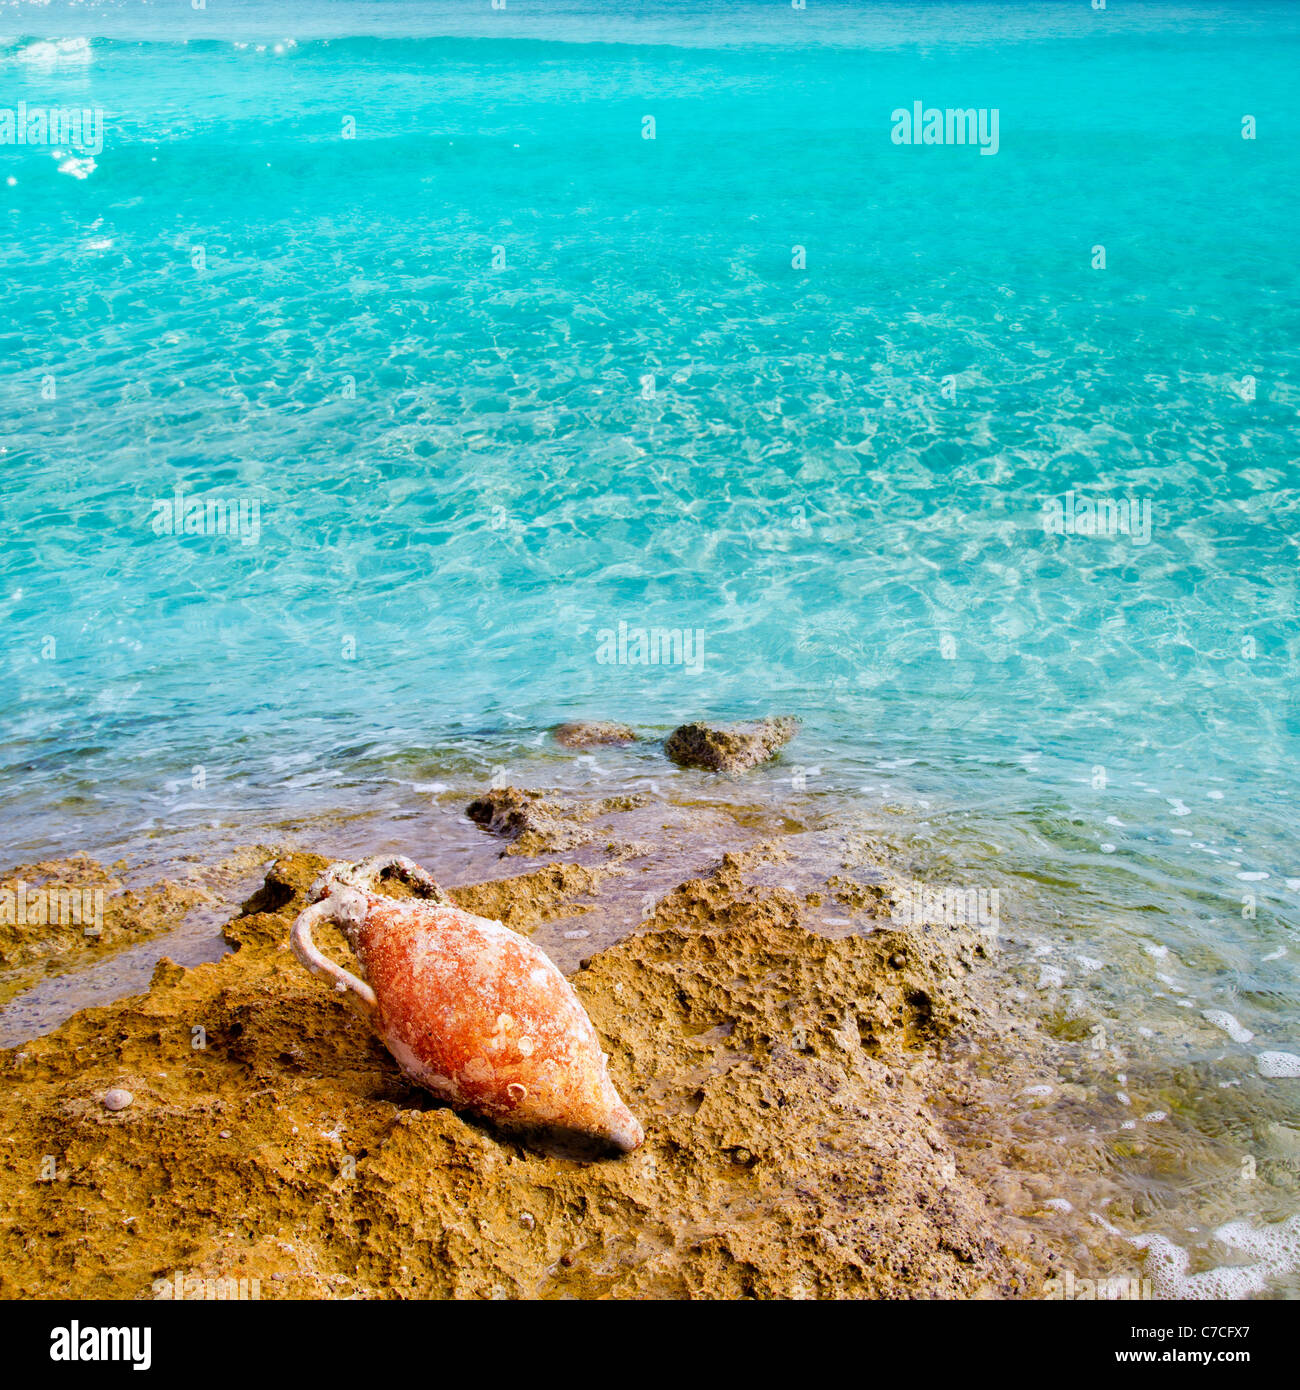 Poterie argile romaine amphore avec salissures marines en Méditerranée rock beach Banque D'Images